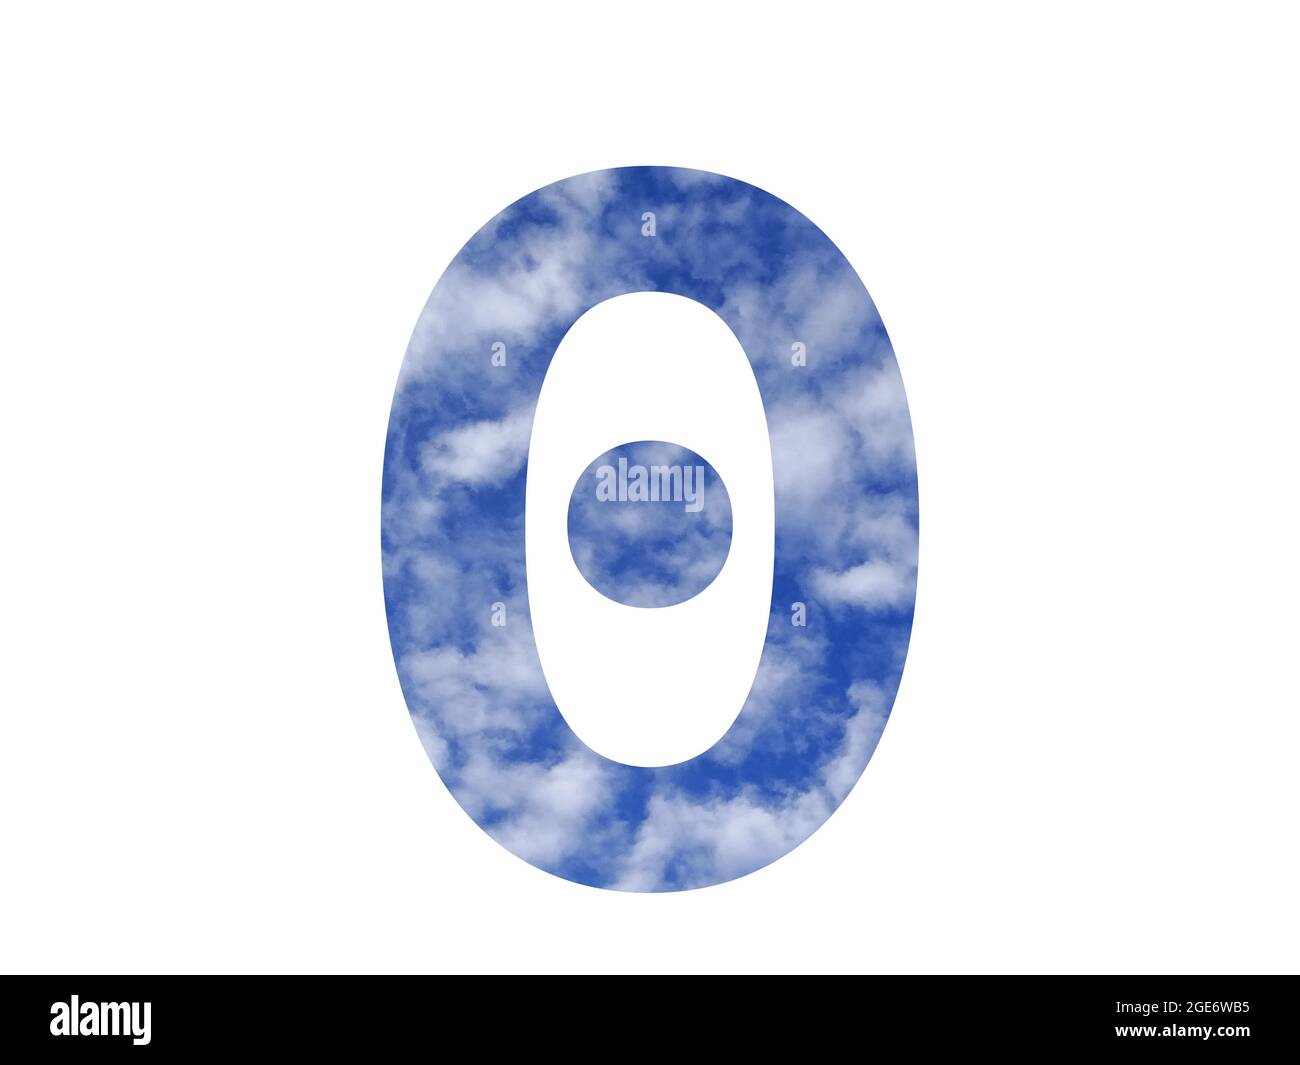 Nummer 0 des Alphabets mit blauem Himmel und weißen Wolken, isoliert auf weißem Hintergrund Stockfoto